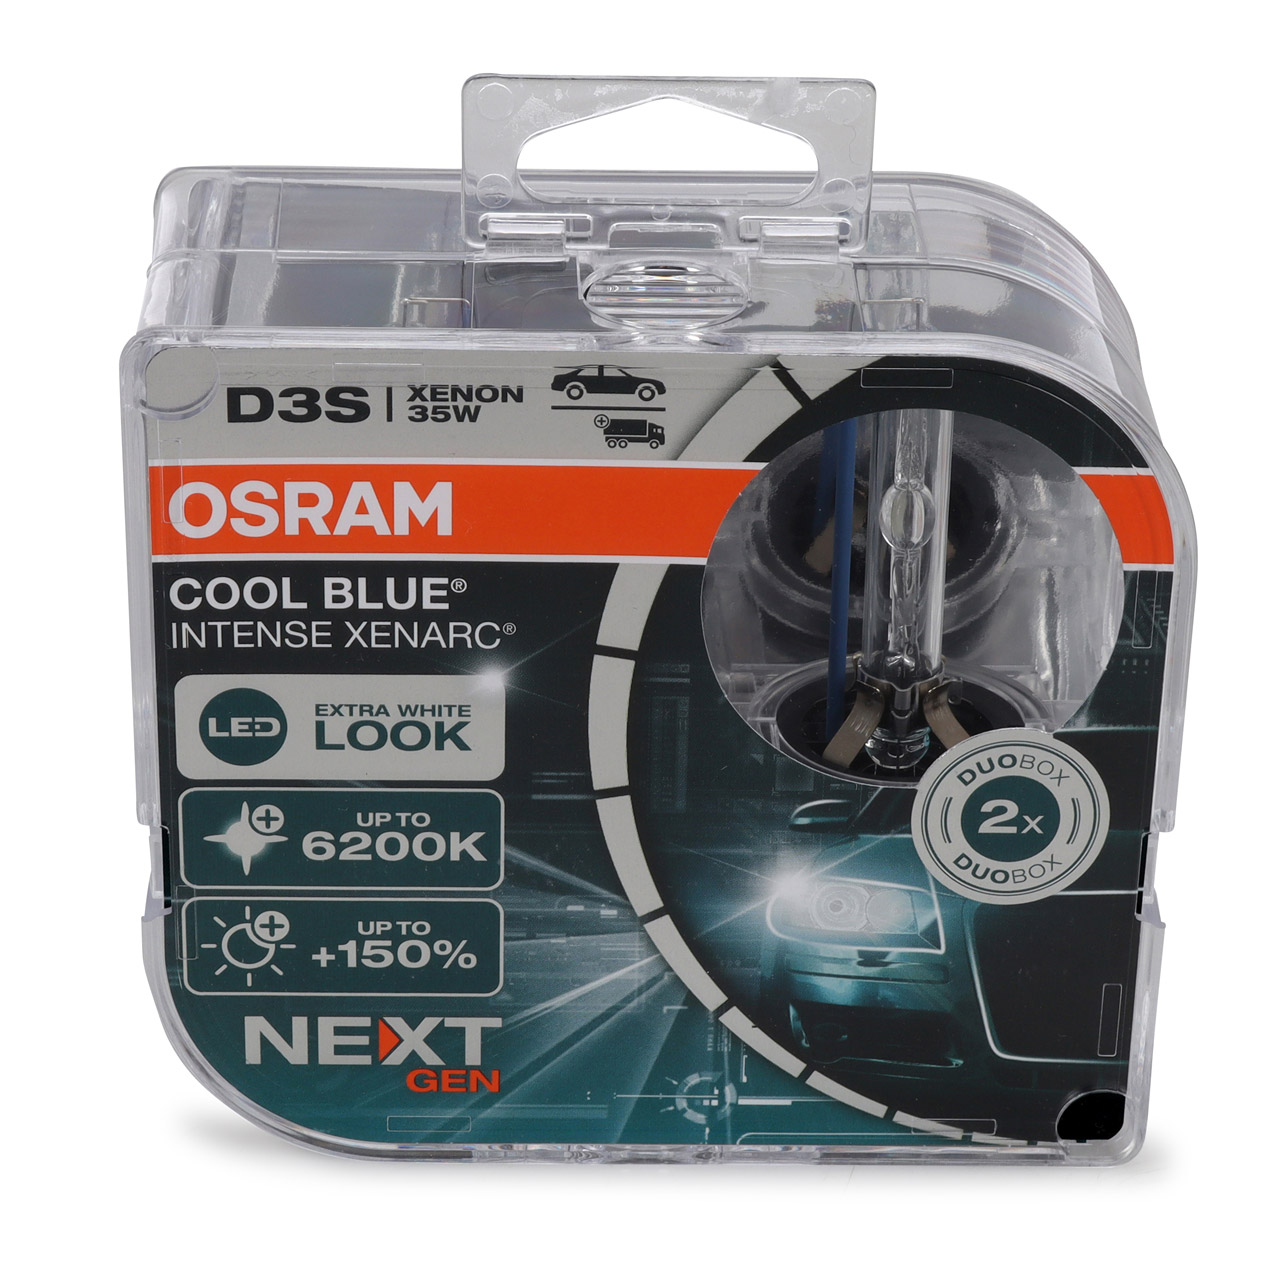 2x OSRAM Xenon Lampe D3S COOL BLUE INTENSE XENARC Next Gen 42V 35W +150% 6200K